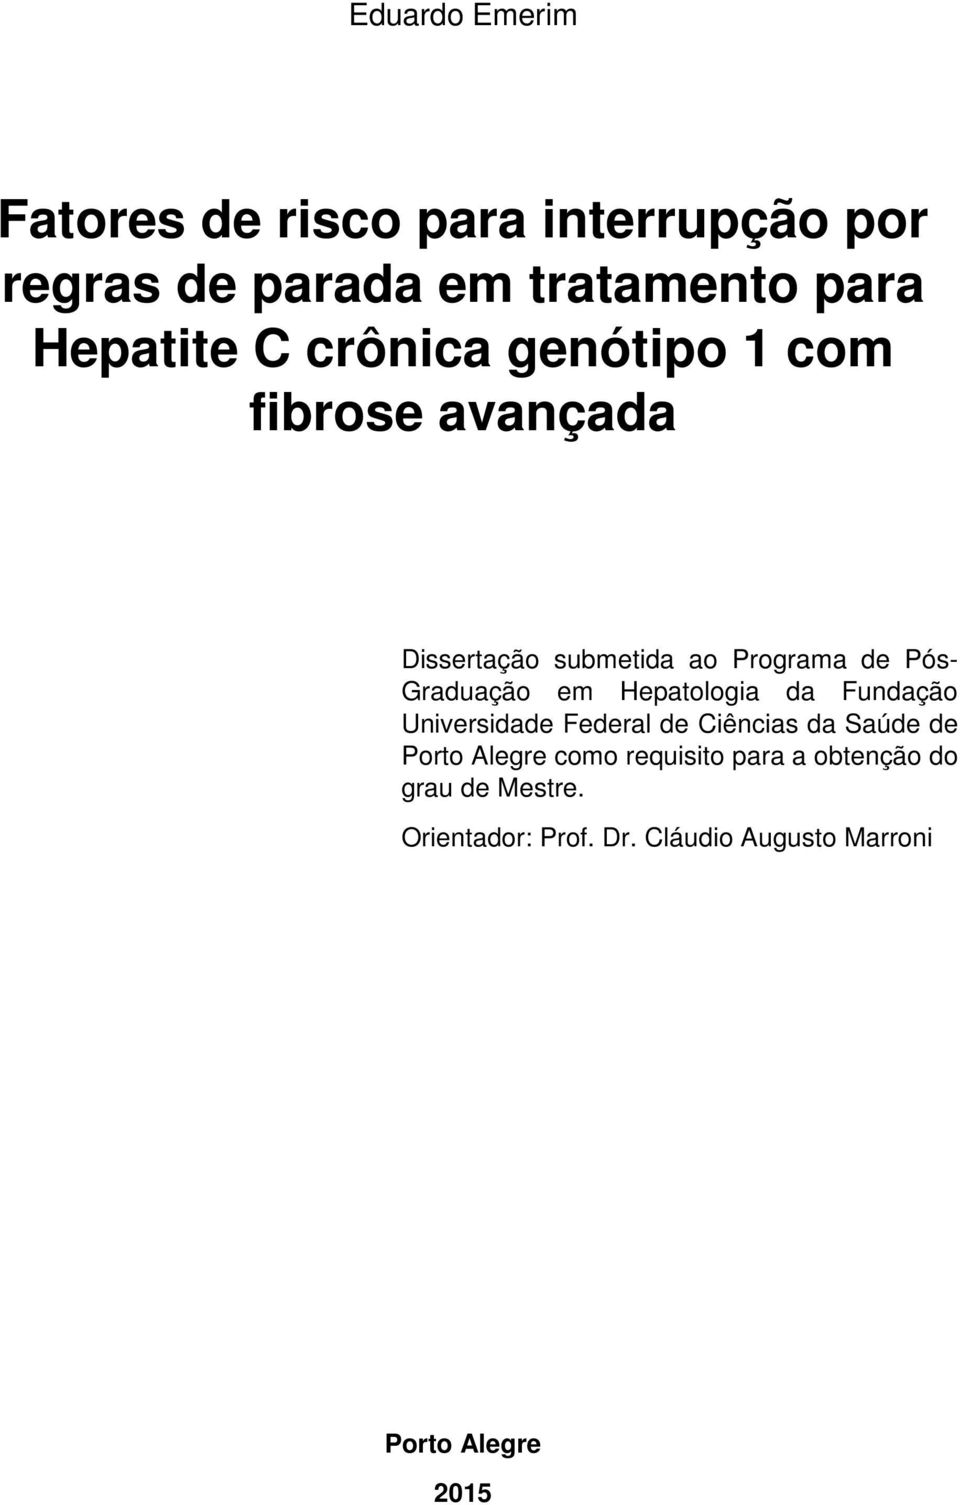 Hepatologia da Fundação Universidade Federal de Ciências da Saúde de Porto Alegre como requisito